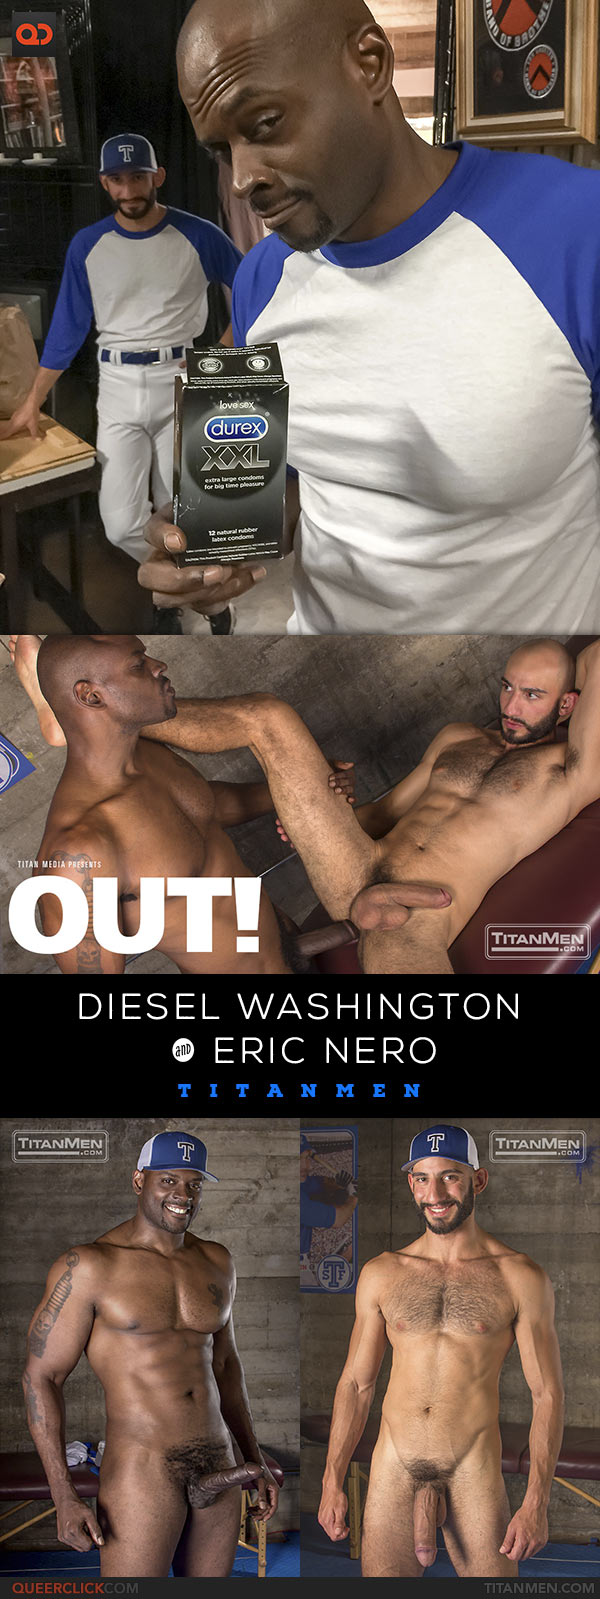 TitanMen: Diesel Washington Fucks Eric Nero - Out!